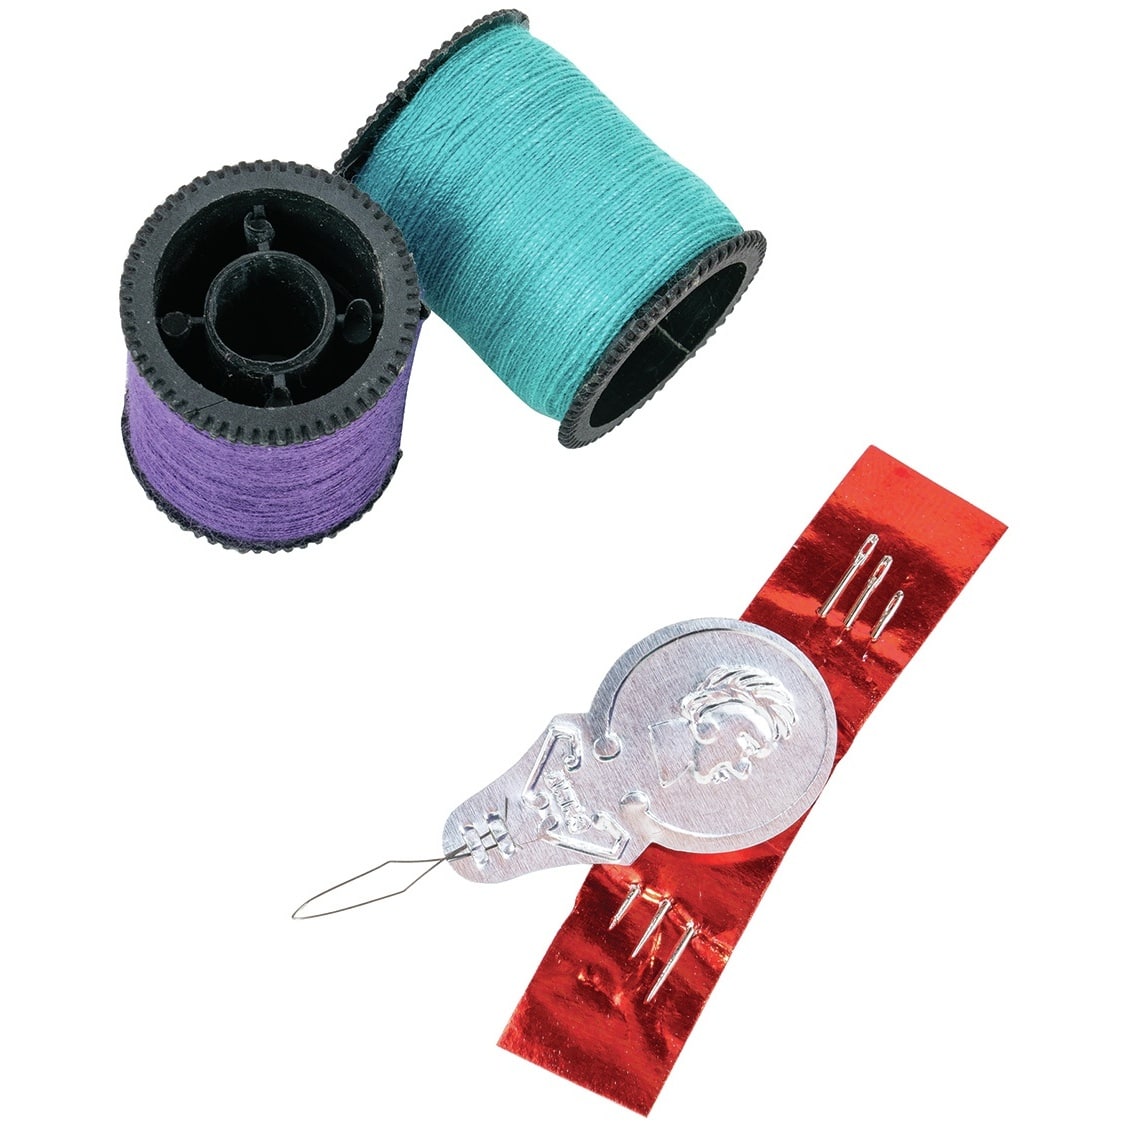 SINGER® Dark Shades Hand Sewing Thread Kit